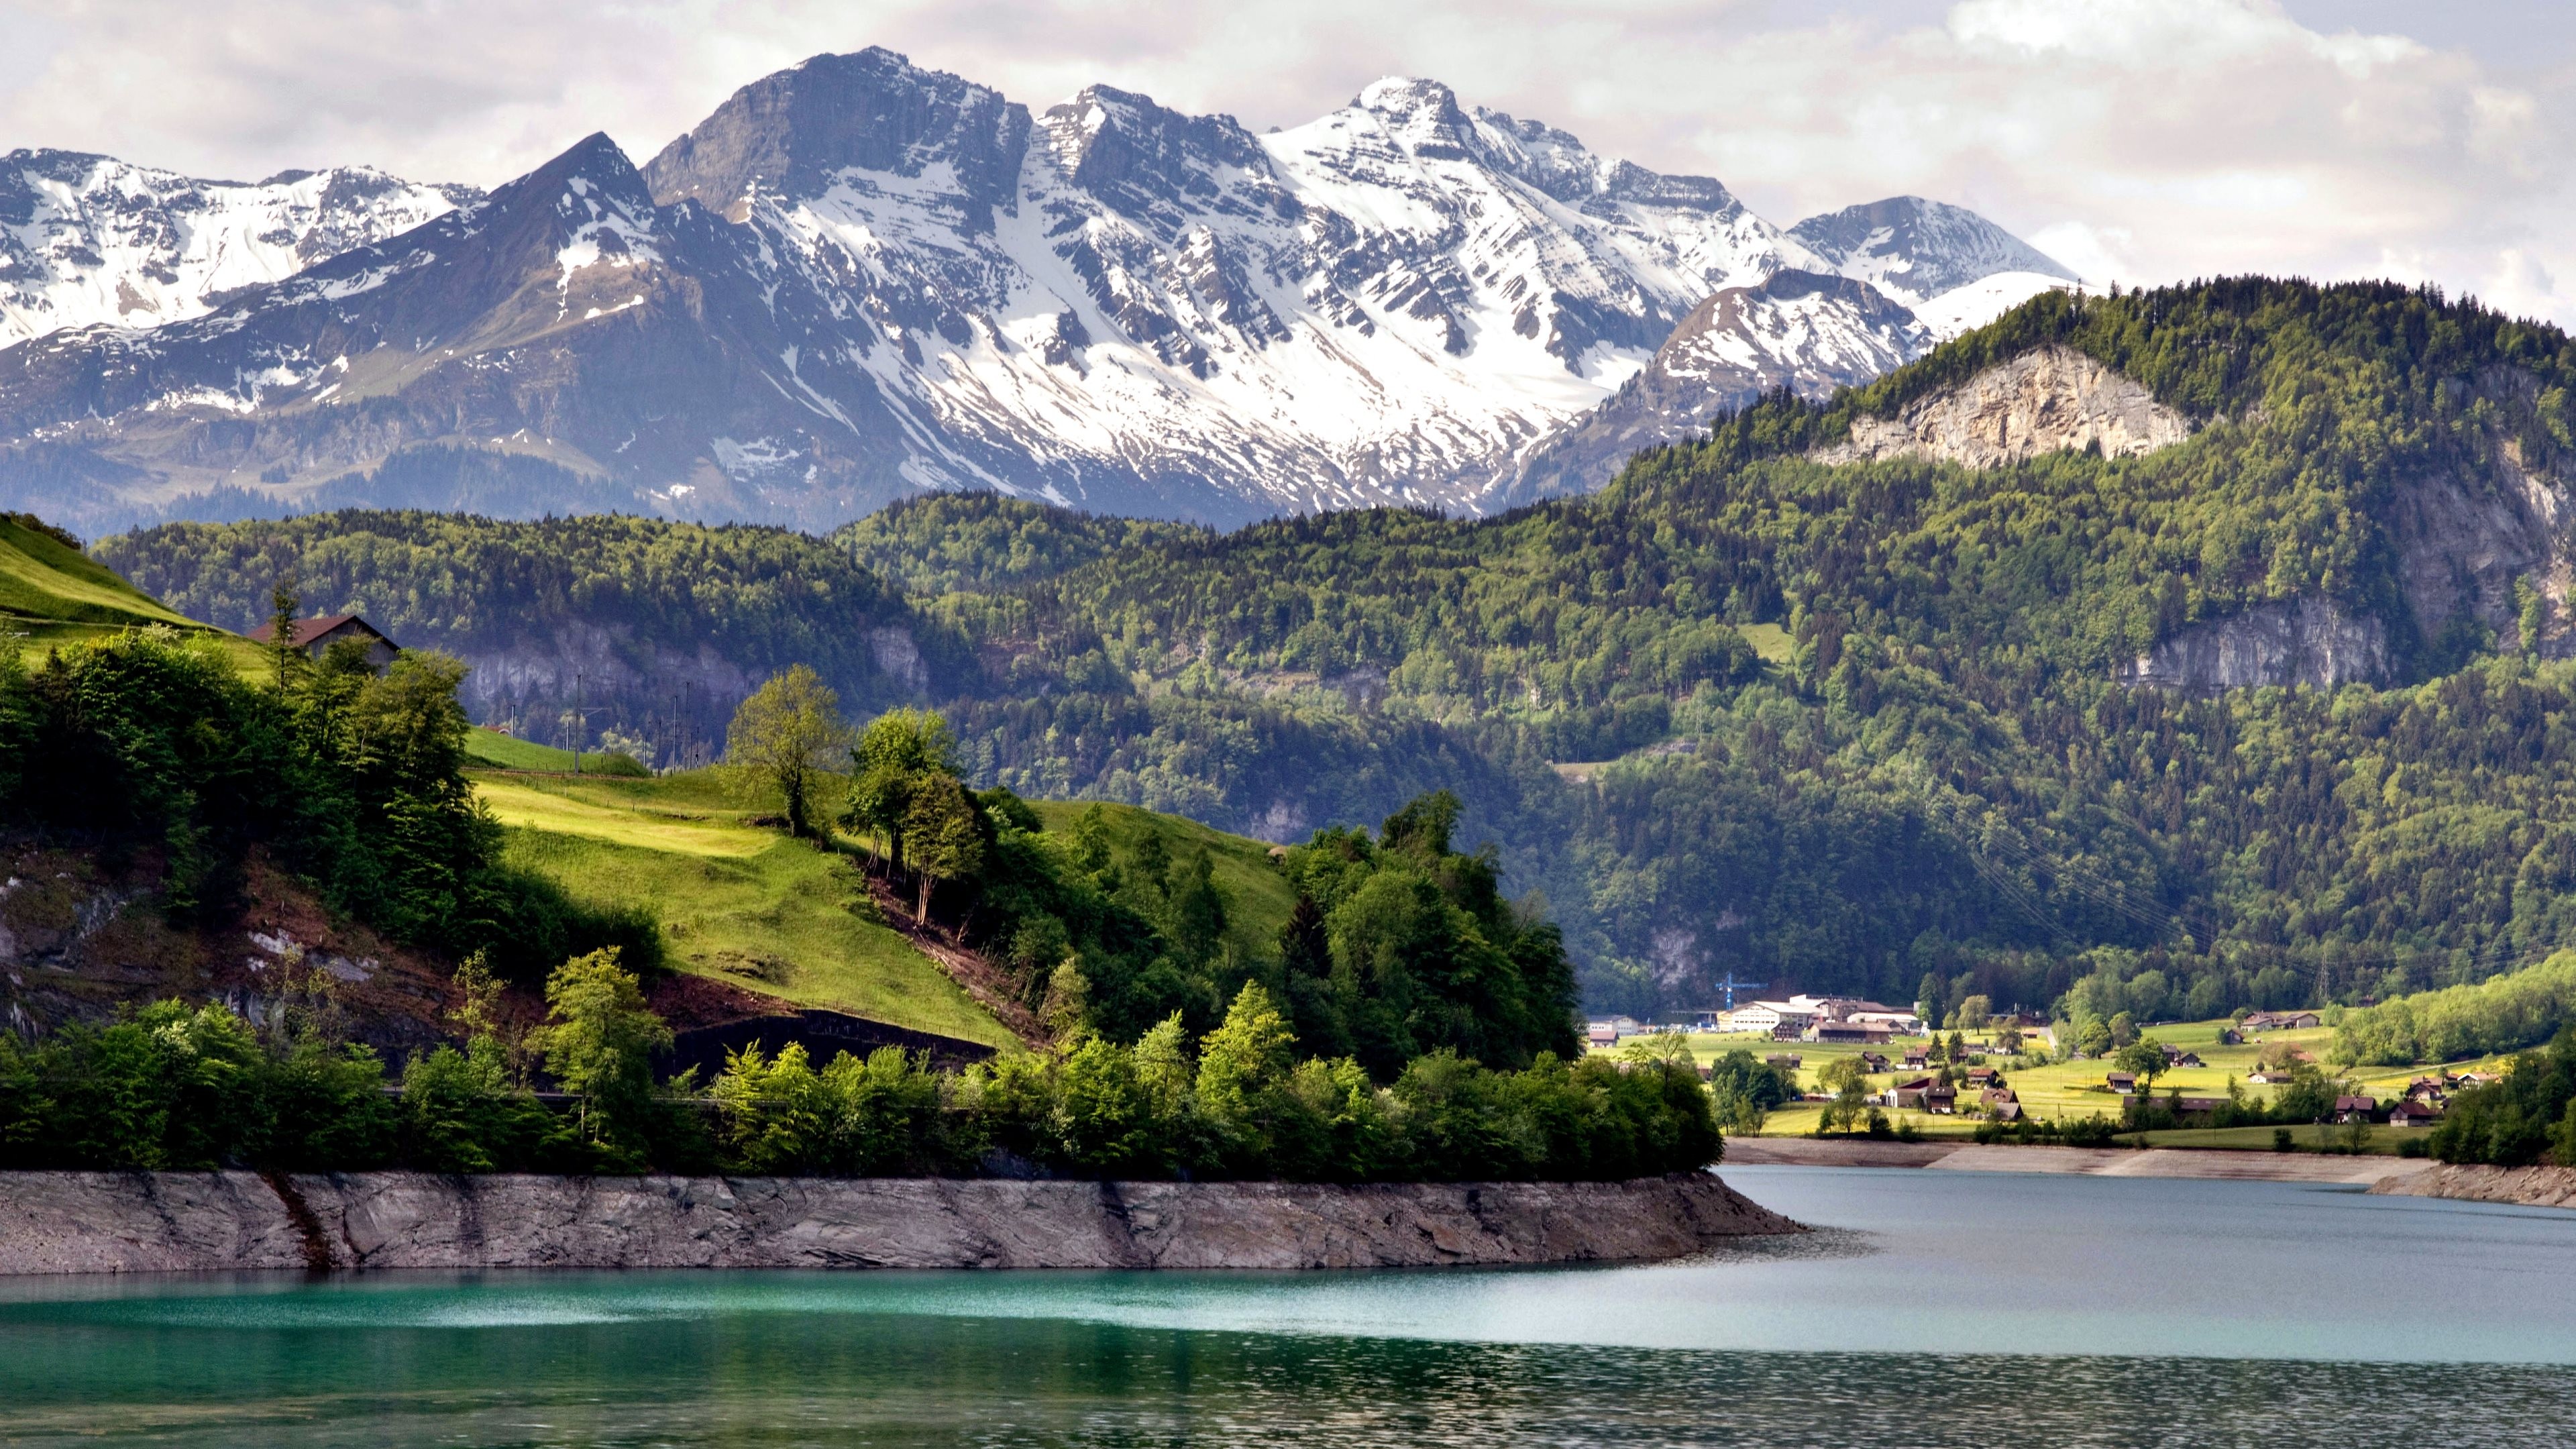 3840x2160 Wallpaper: Landscape from Swiss Alps. Ultra HD 4K 